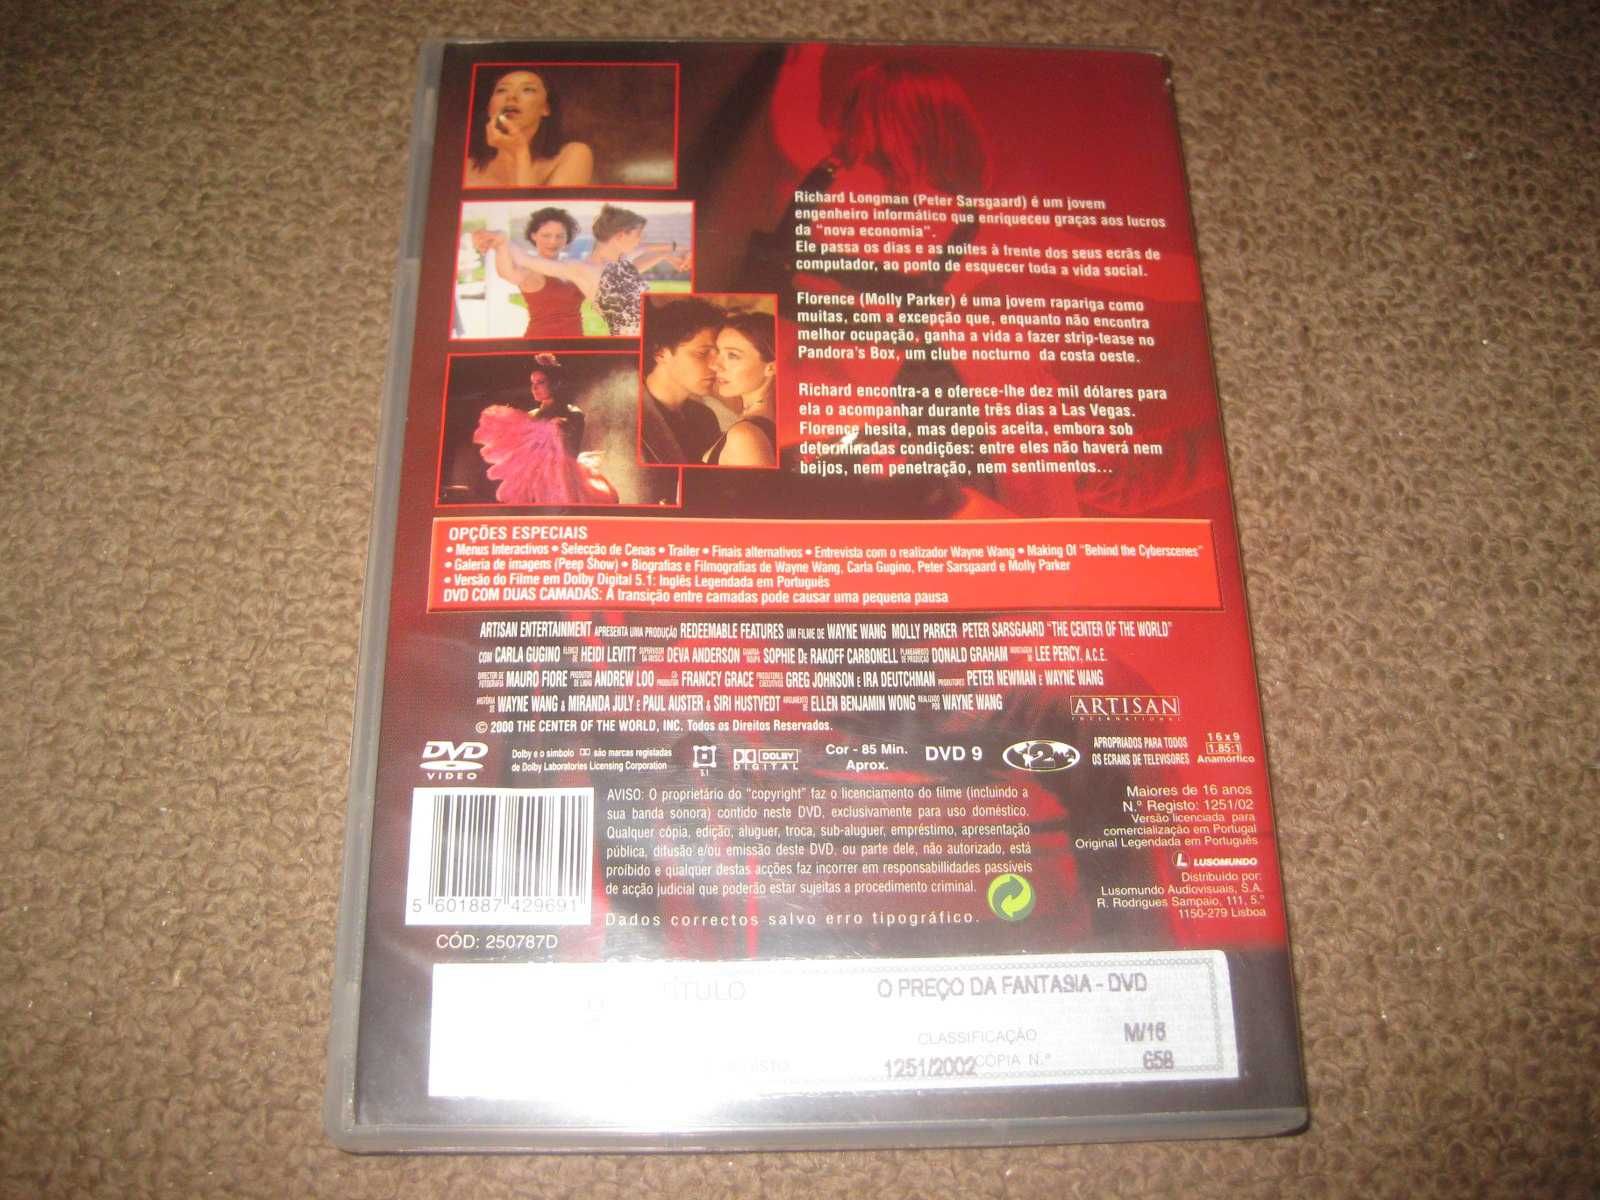 DVD "O Preço da Fantasia" de Wayne Wang/Raro!